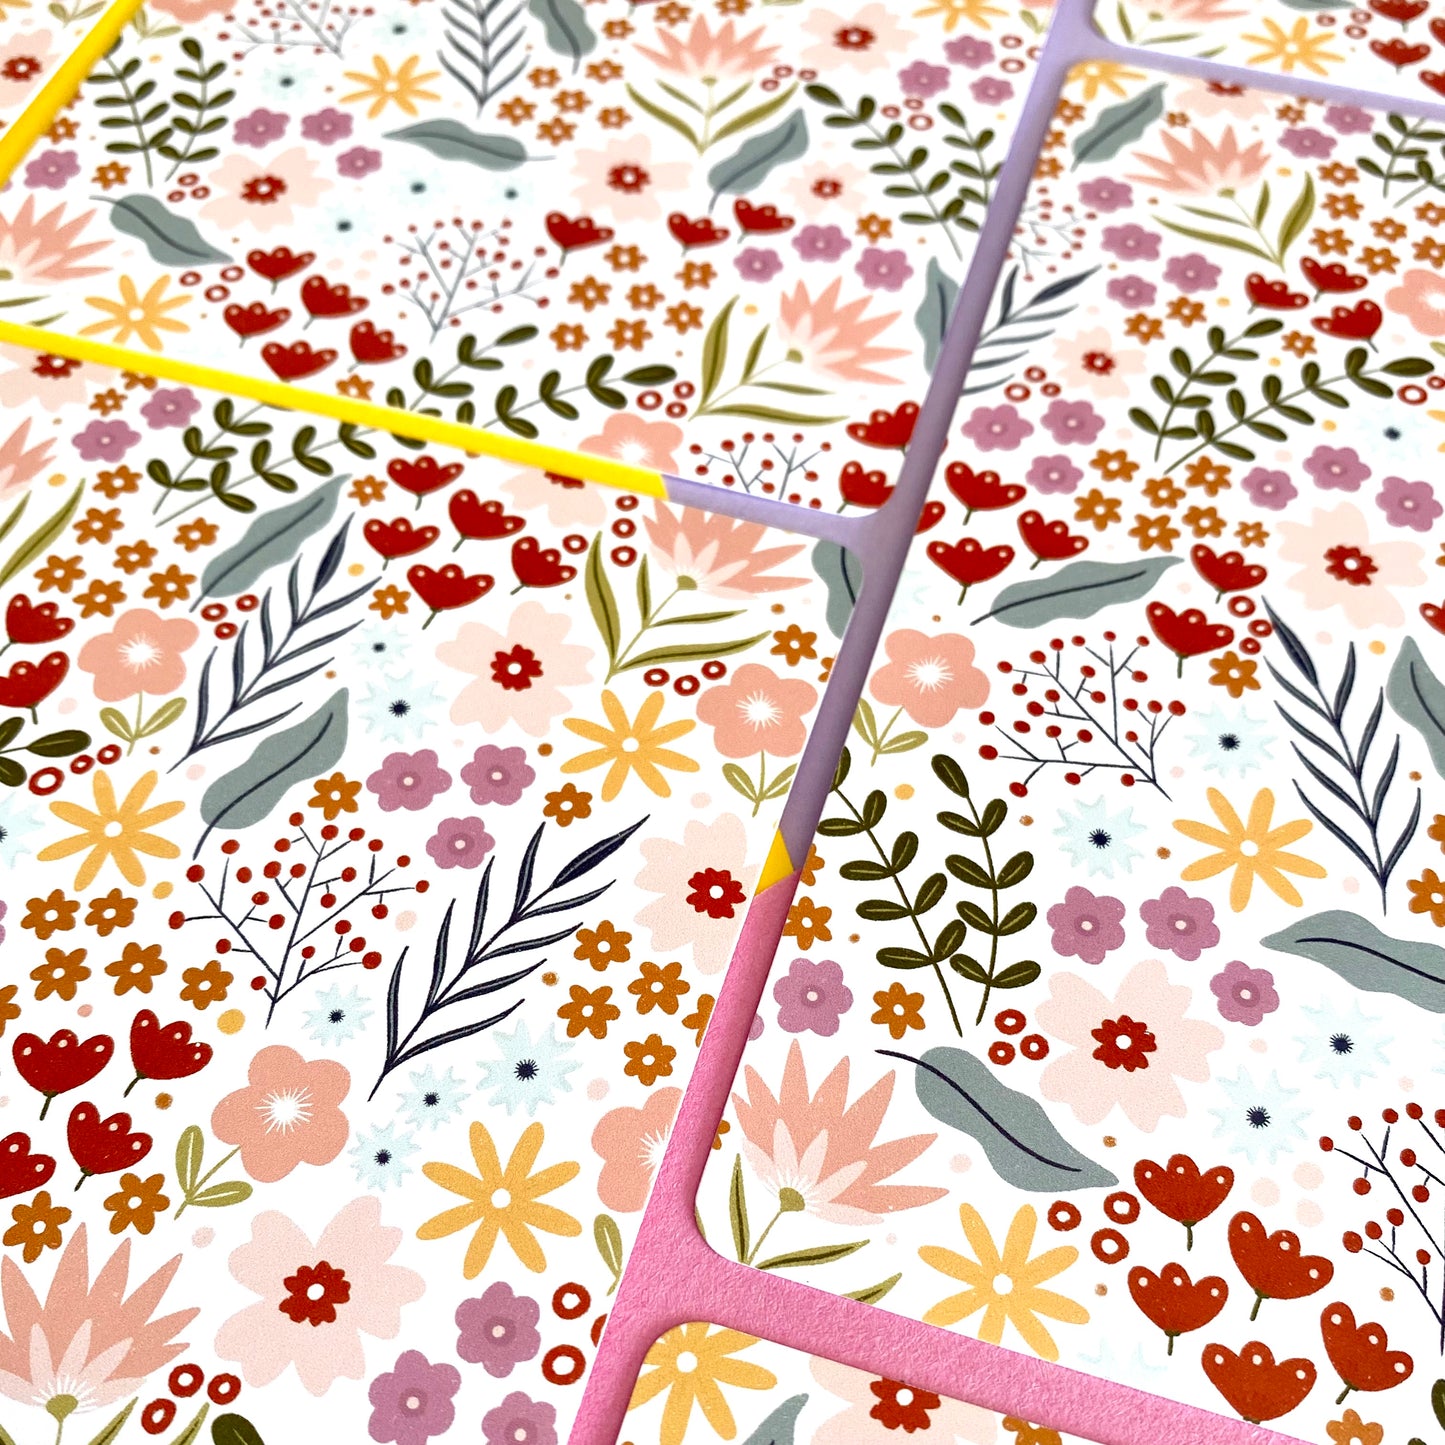 Flower pattern - Postcard